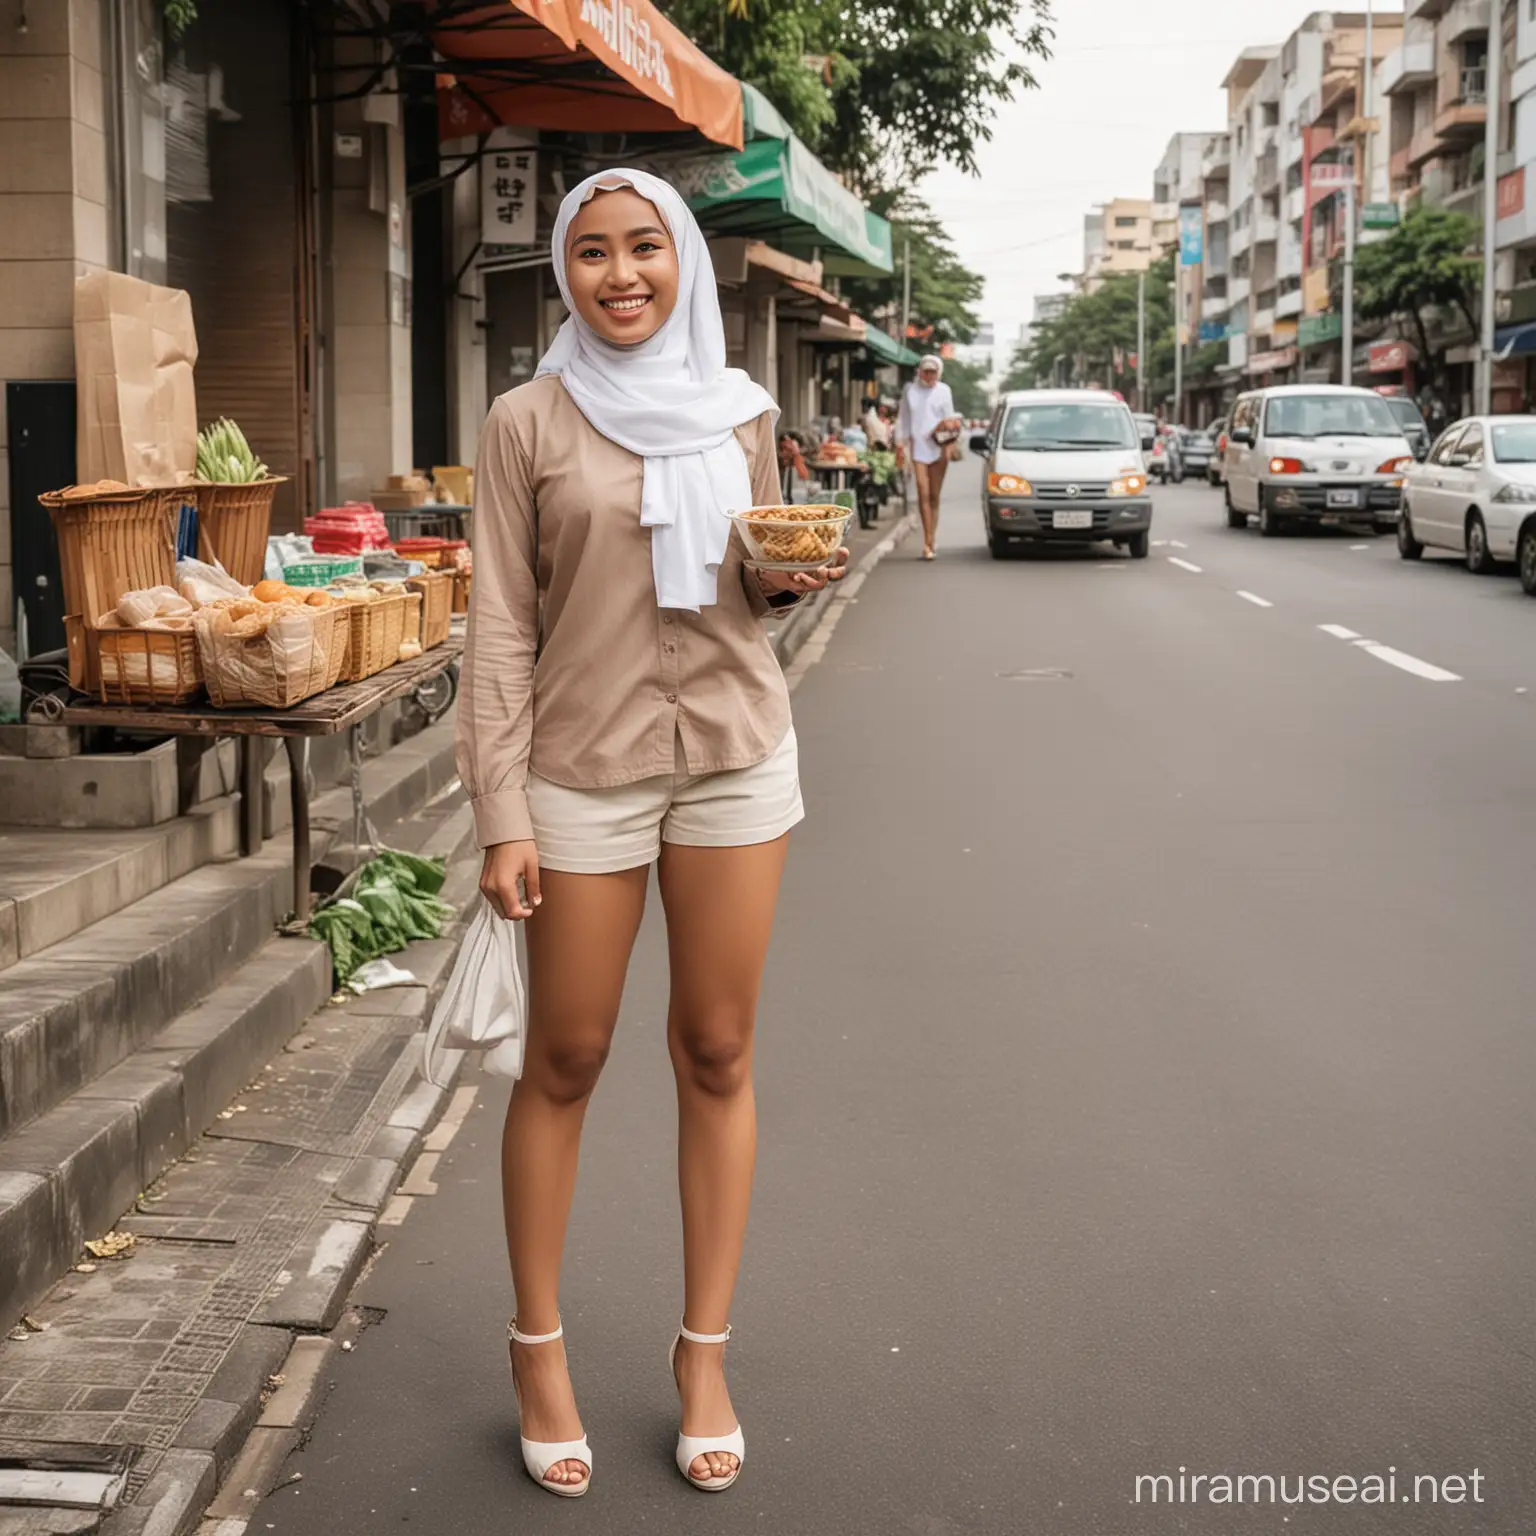 Gadis cantik indonesia memakaii kaos lengan panjang, memakai celana pendek warna coklat muda, berdiri di trotoar kota jakarta, memegang mangkok putih. Memakai jilbab syariah, memakai sepatu hak tinggi. Di samping gadis itu ada pedagang mie sedang tersenyum